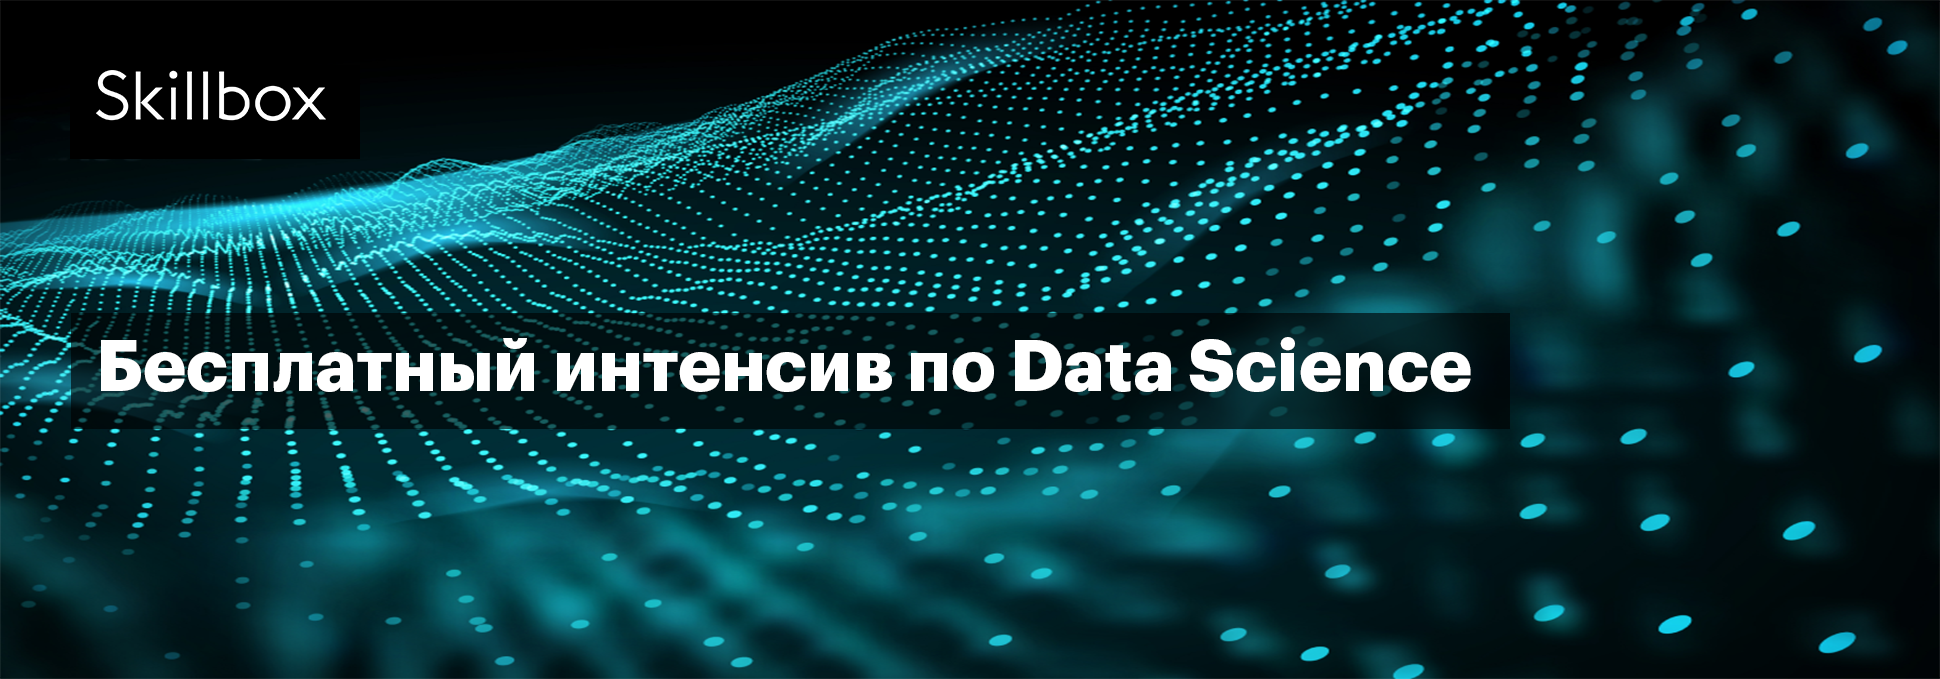 Профессия Data Scientist: учимся обработке и анализу данных за 3 дня